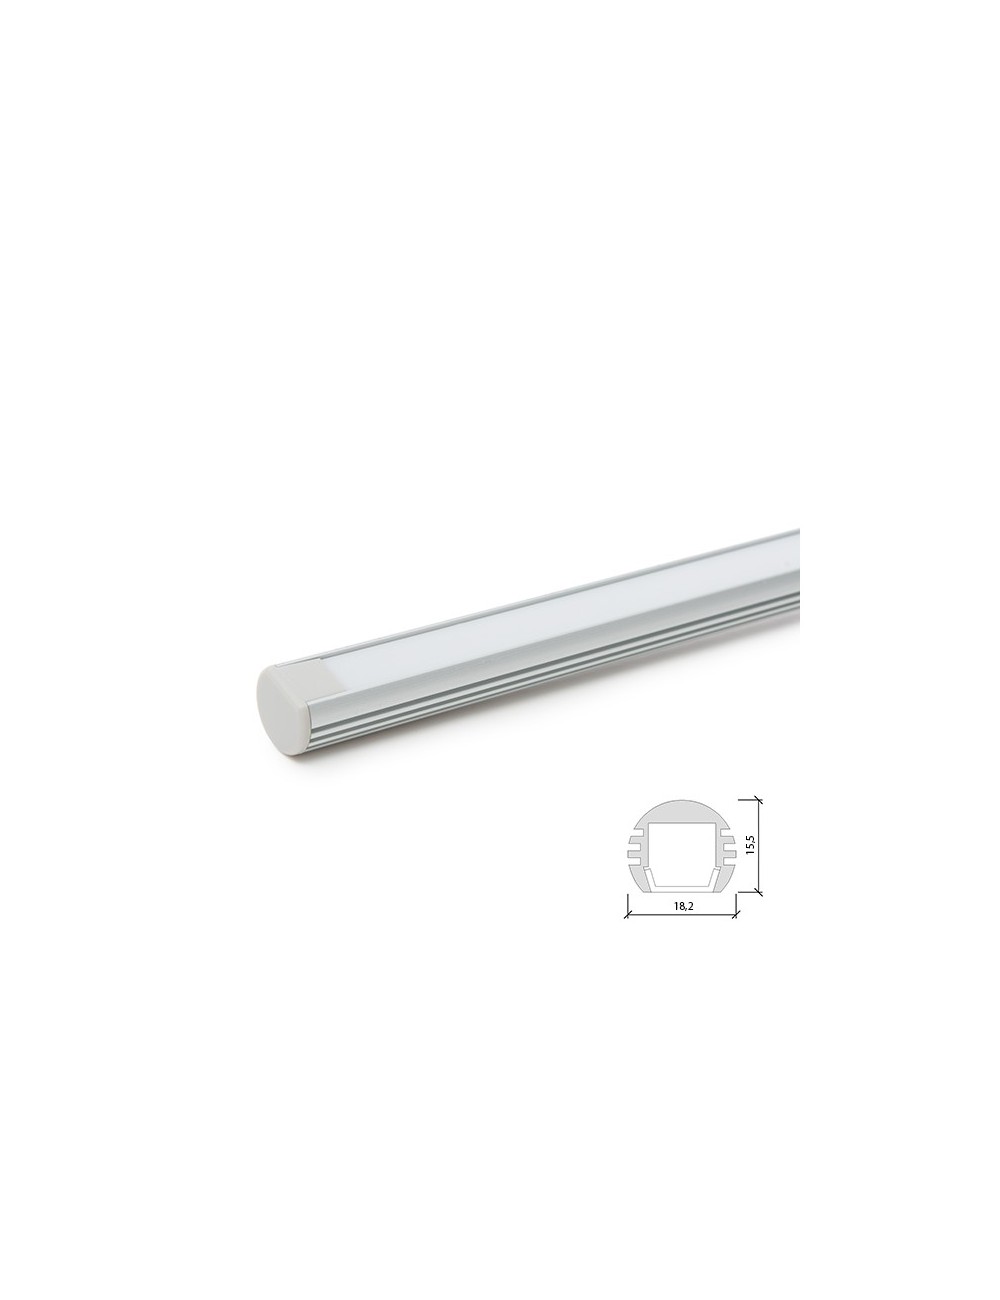 Profil Aluminium Pour Bande LED Pendaison - Diffuseur laiteux SU-A1818 x 2M